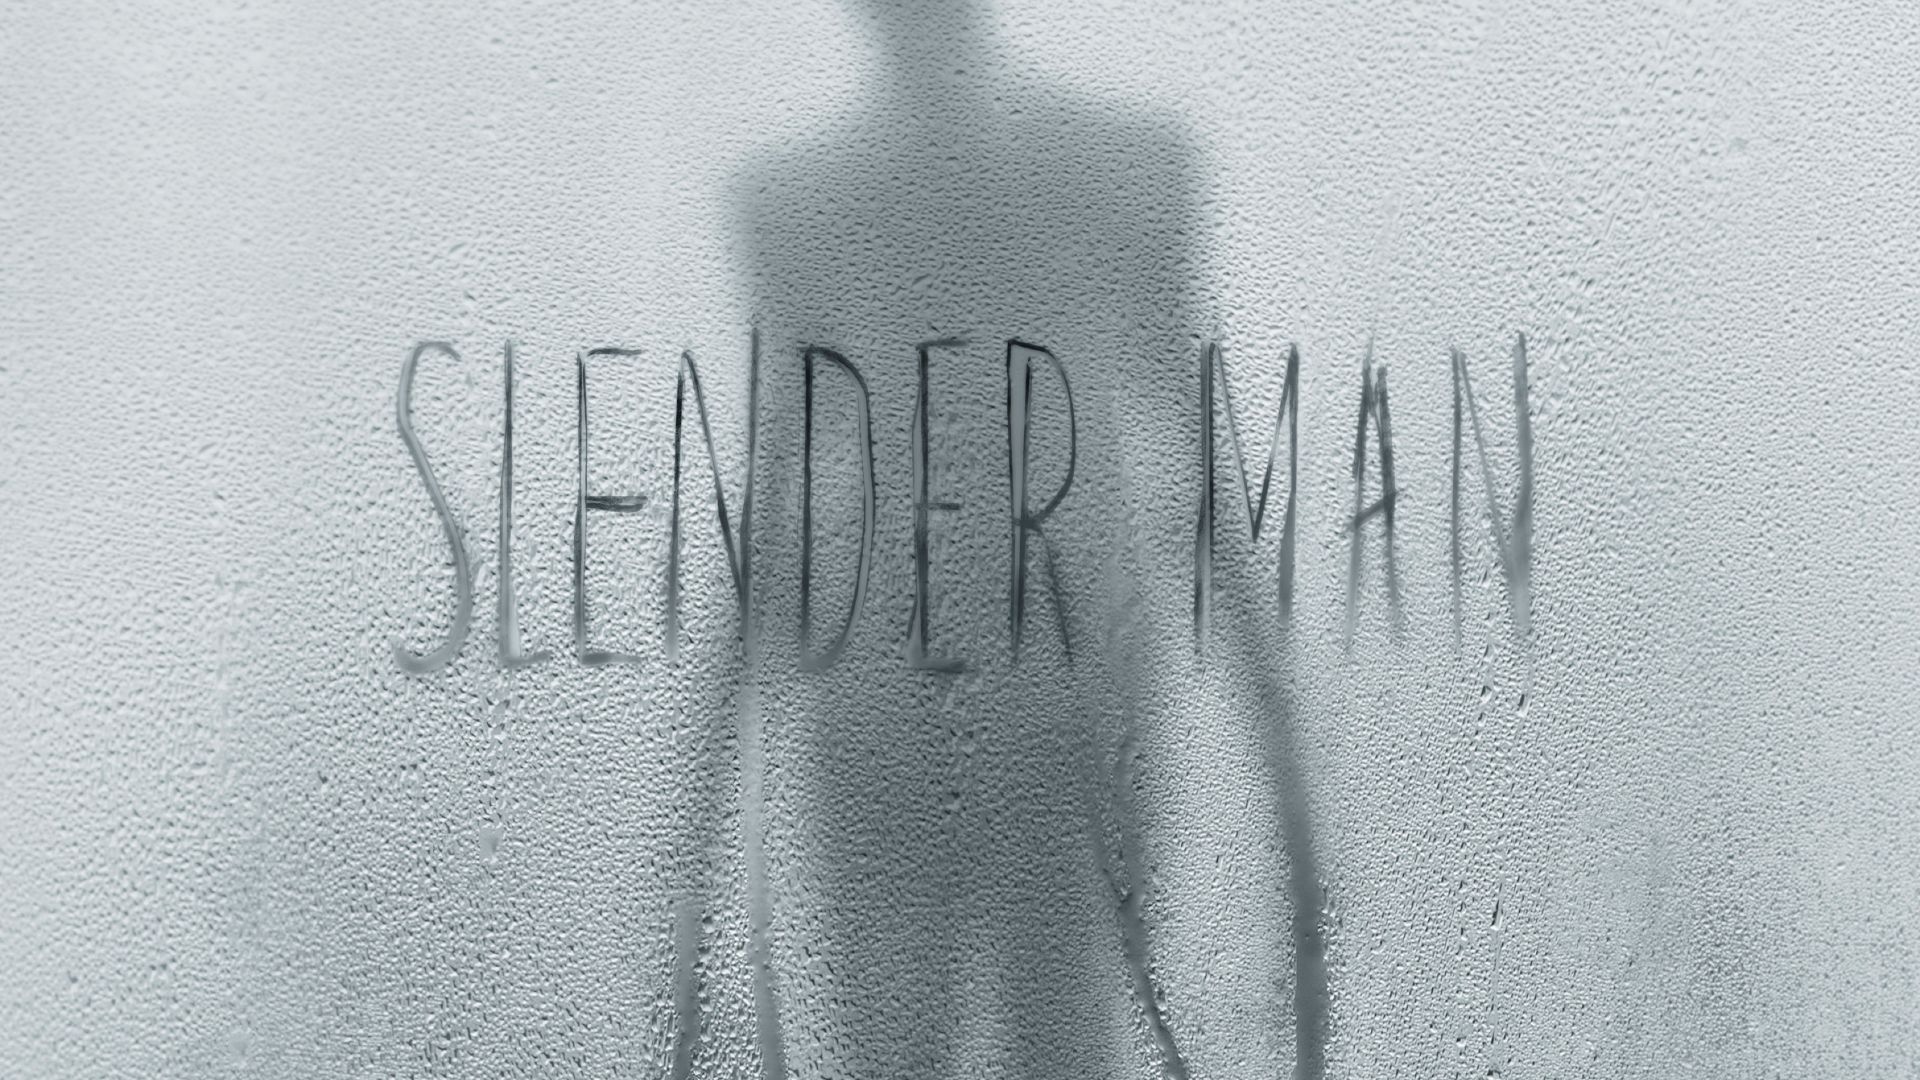 Слендермен, постер, Slender Man, poster, 4K (horizontal)